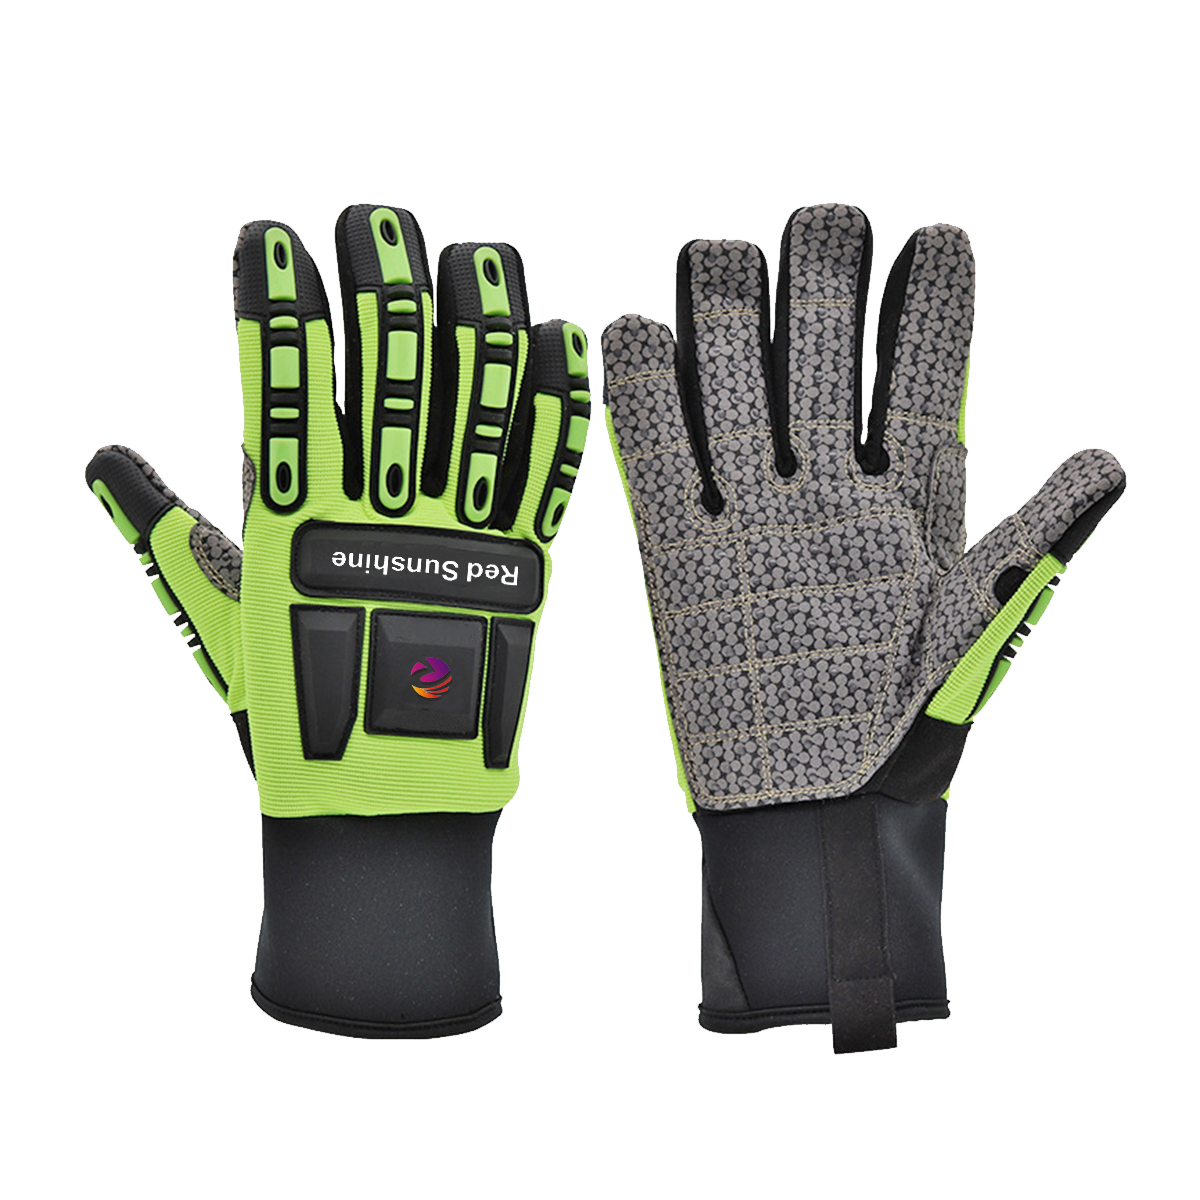 Висококачествени ръкавици със силиконово покритие Удароустойчиви ръкавици TPR Работни механични предпазни ръкавици Ръкавици за масло и газ